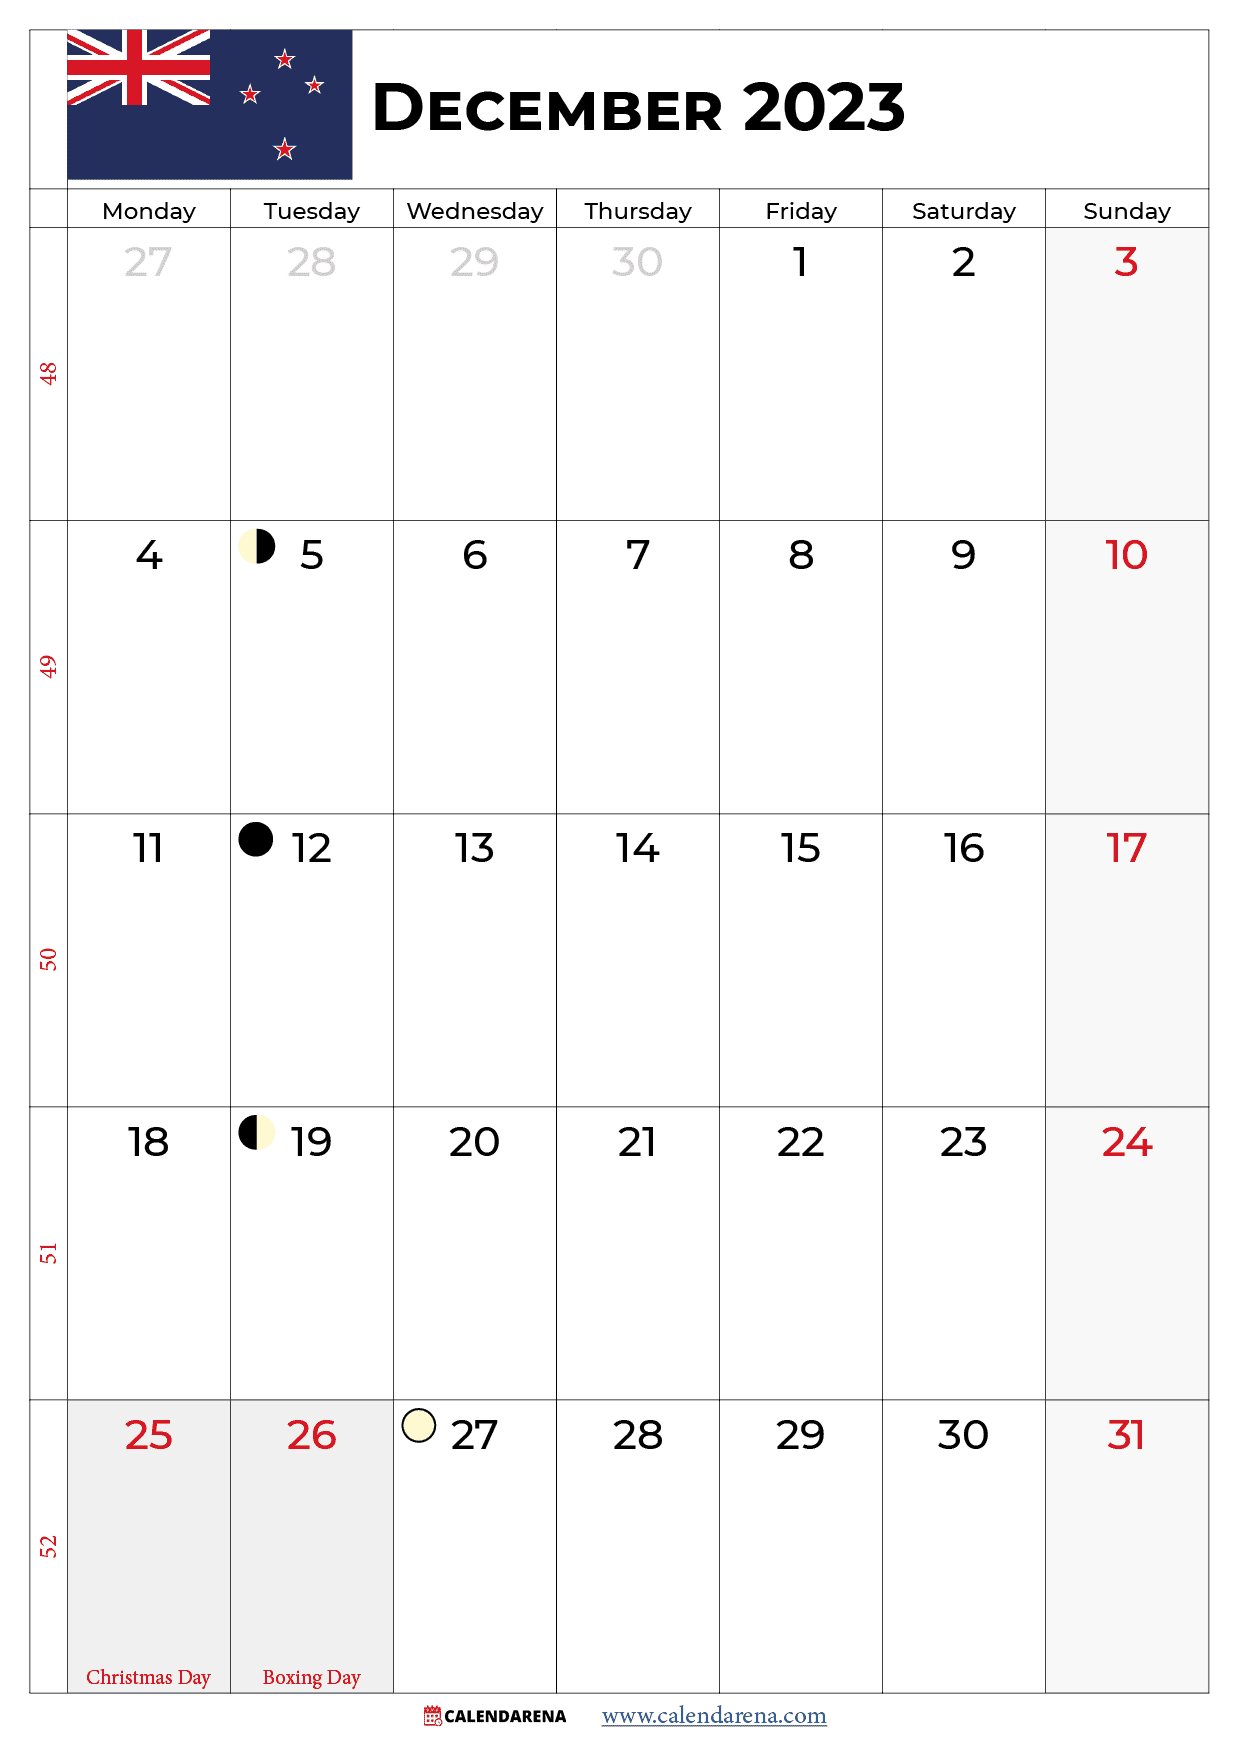 calendar december 2023 new zealand